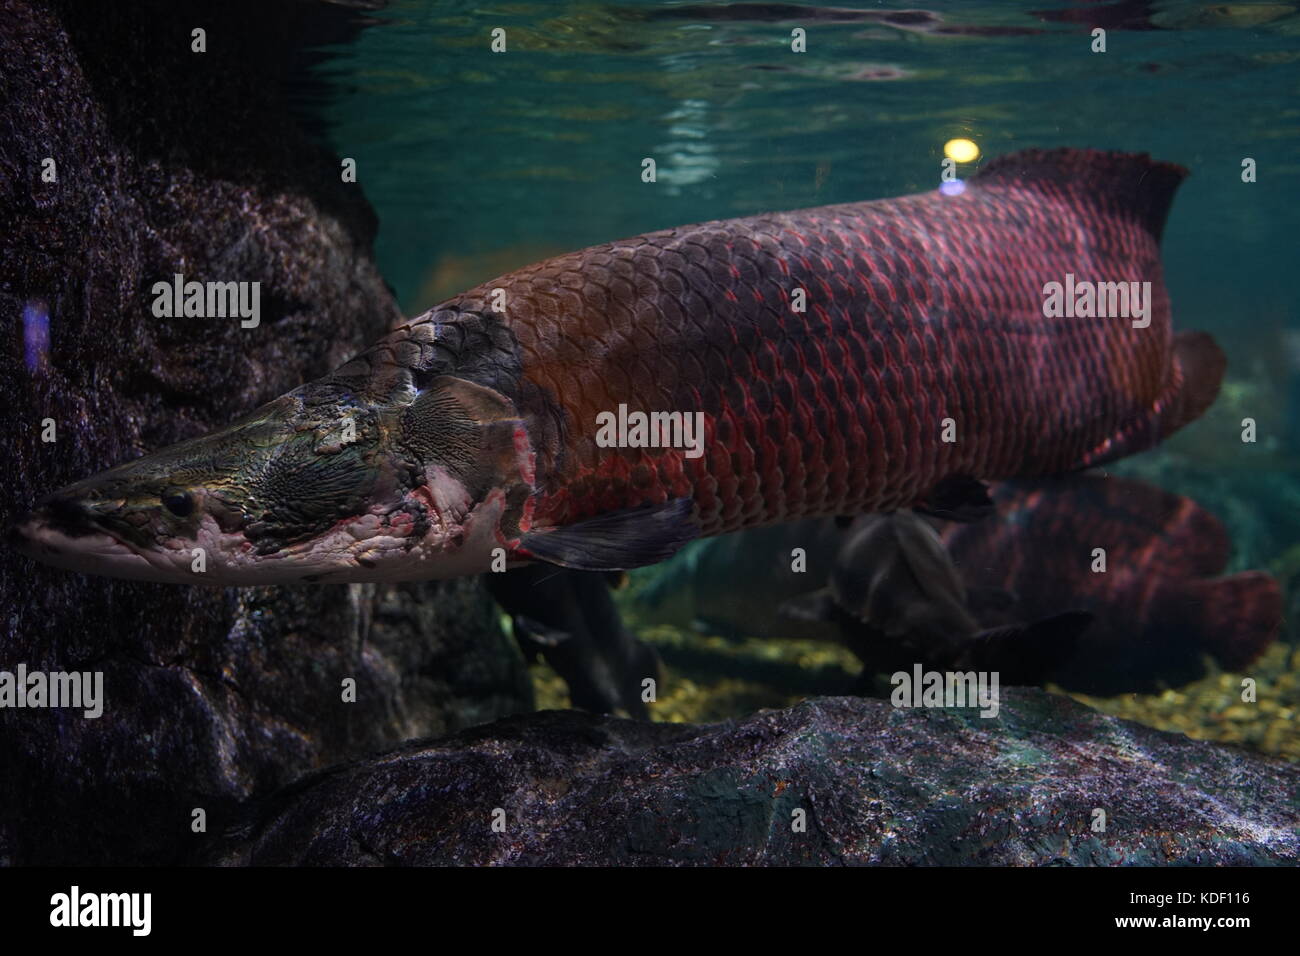 Arapaima giga nadando lentamente en el tanque del acuario. Foto de stock